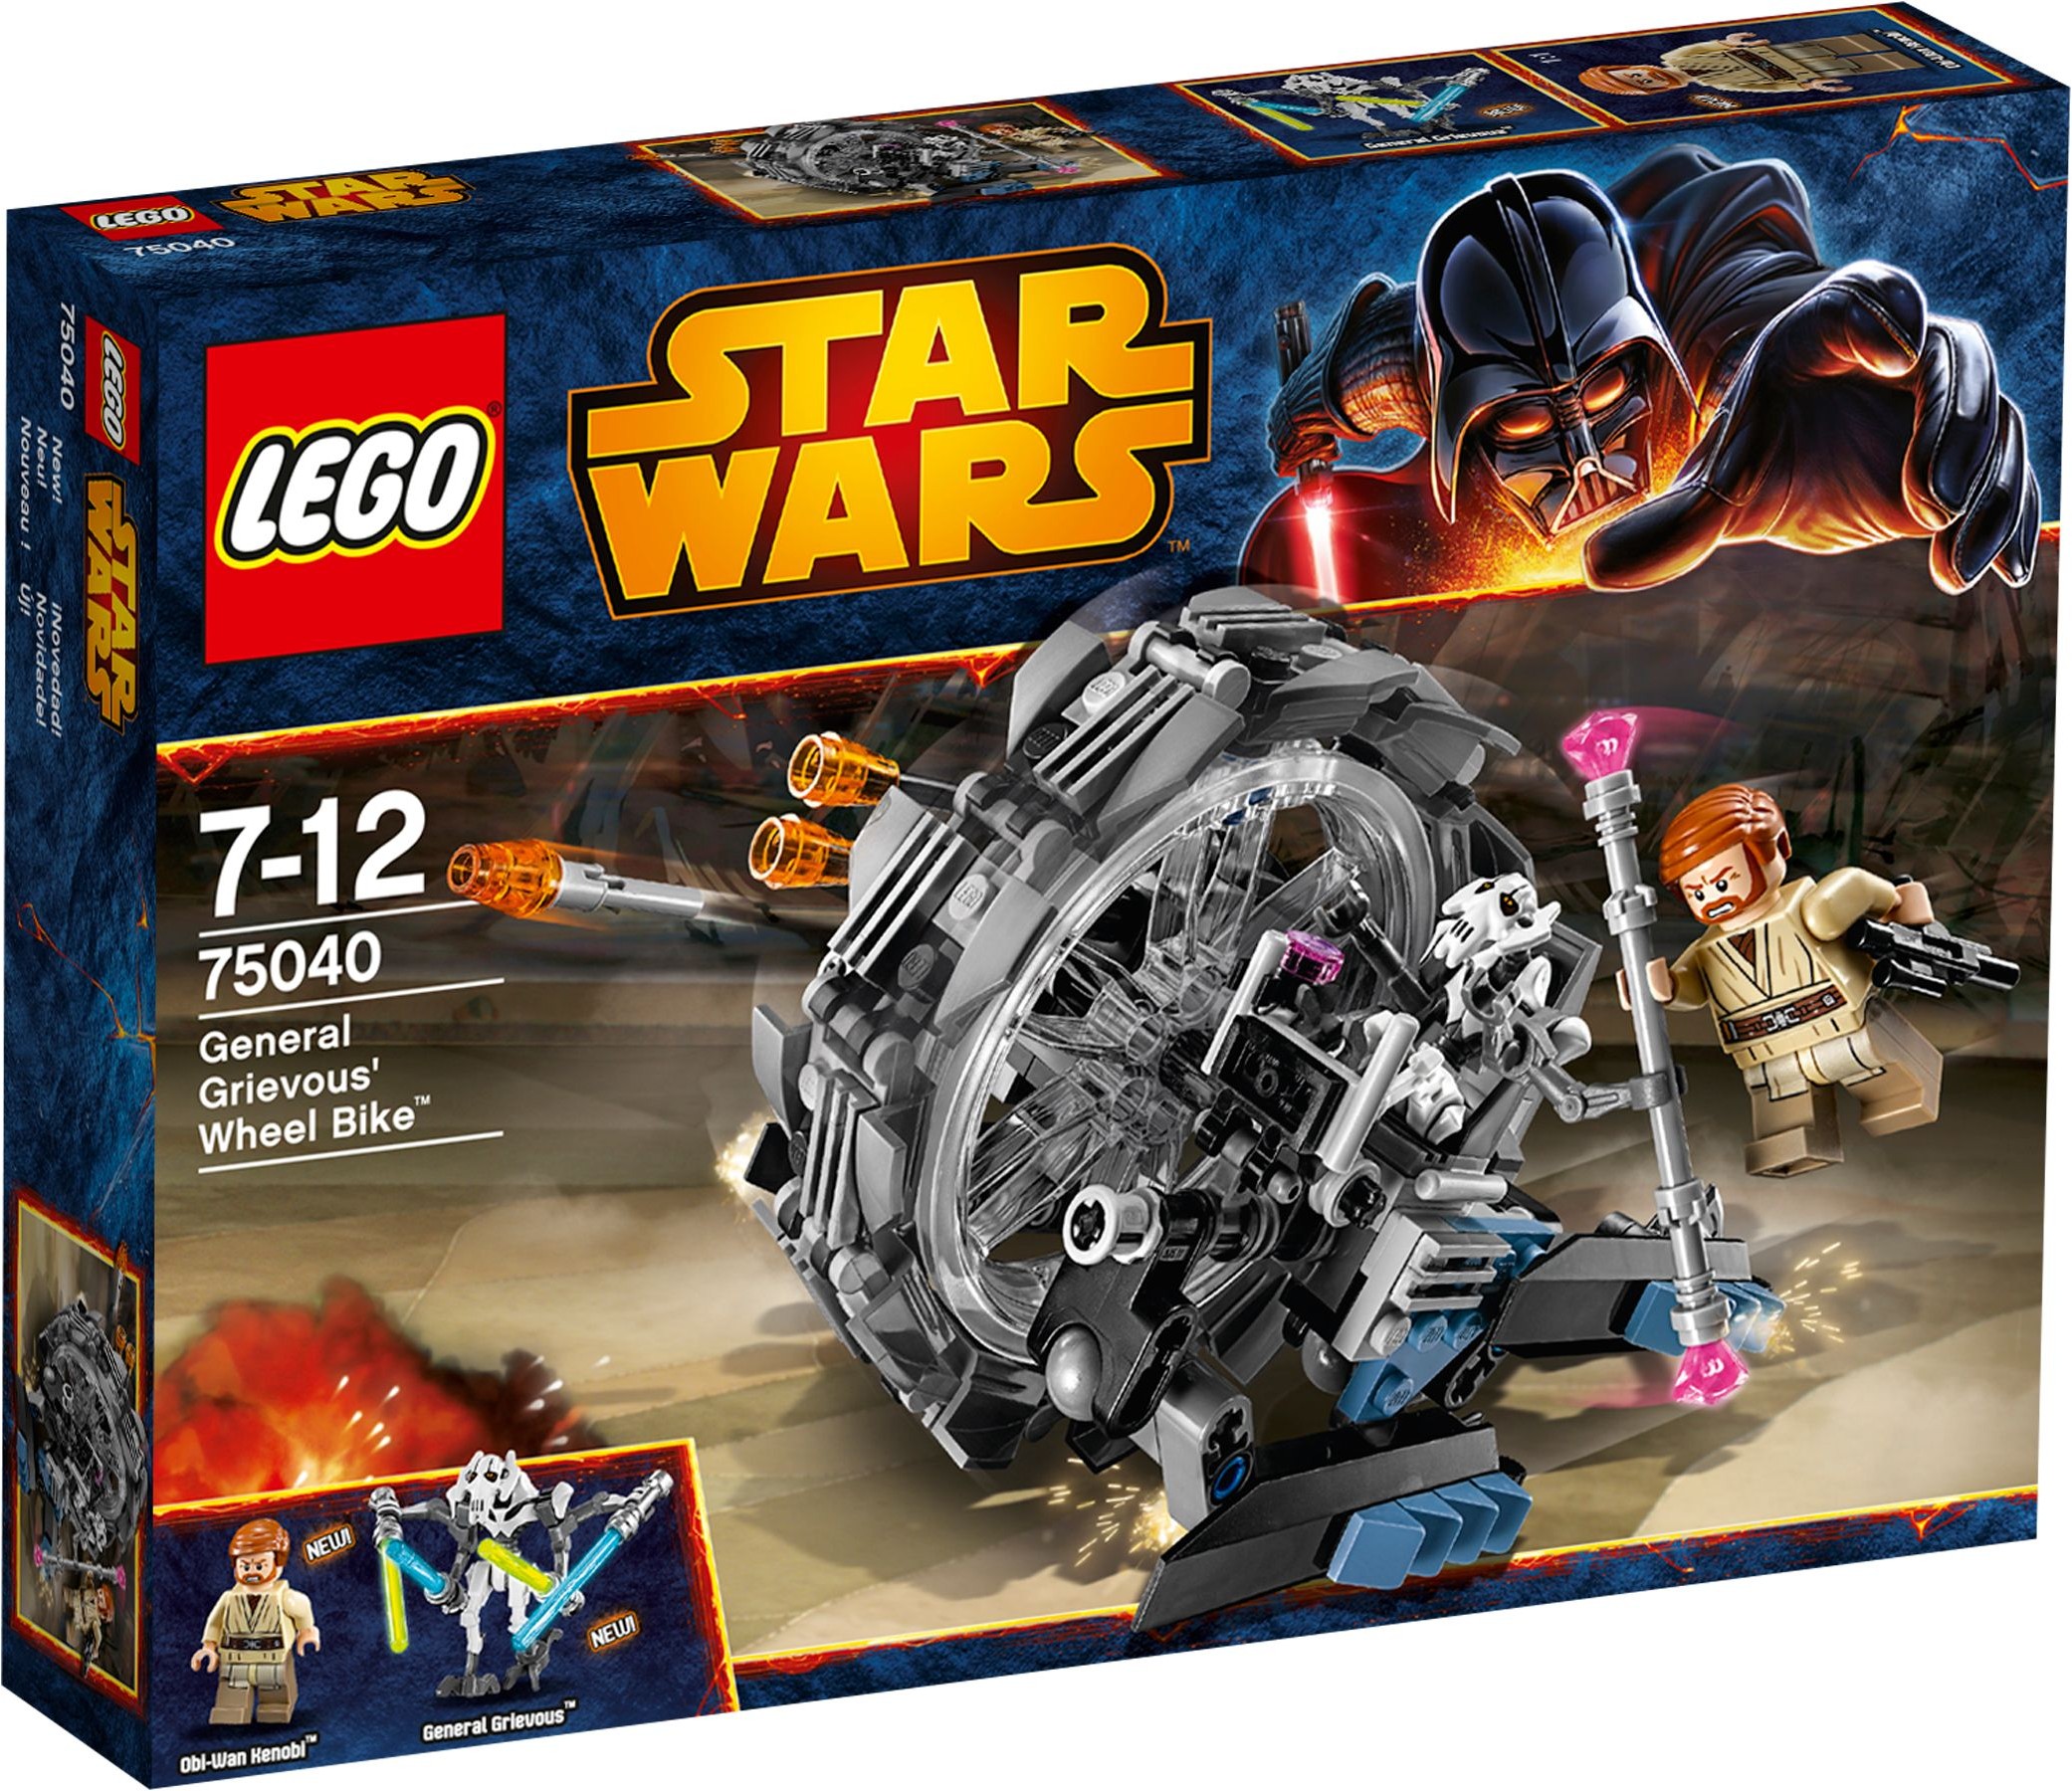 LEGO Star Wars General Grievous' Wheel Bike